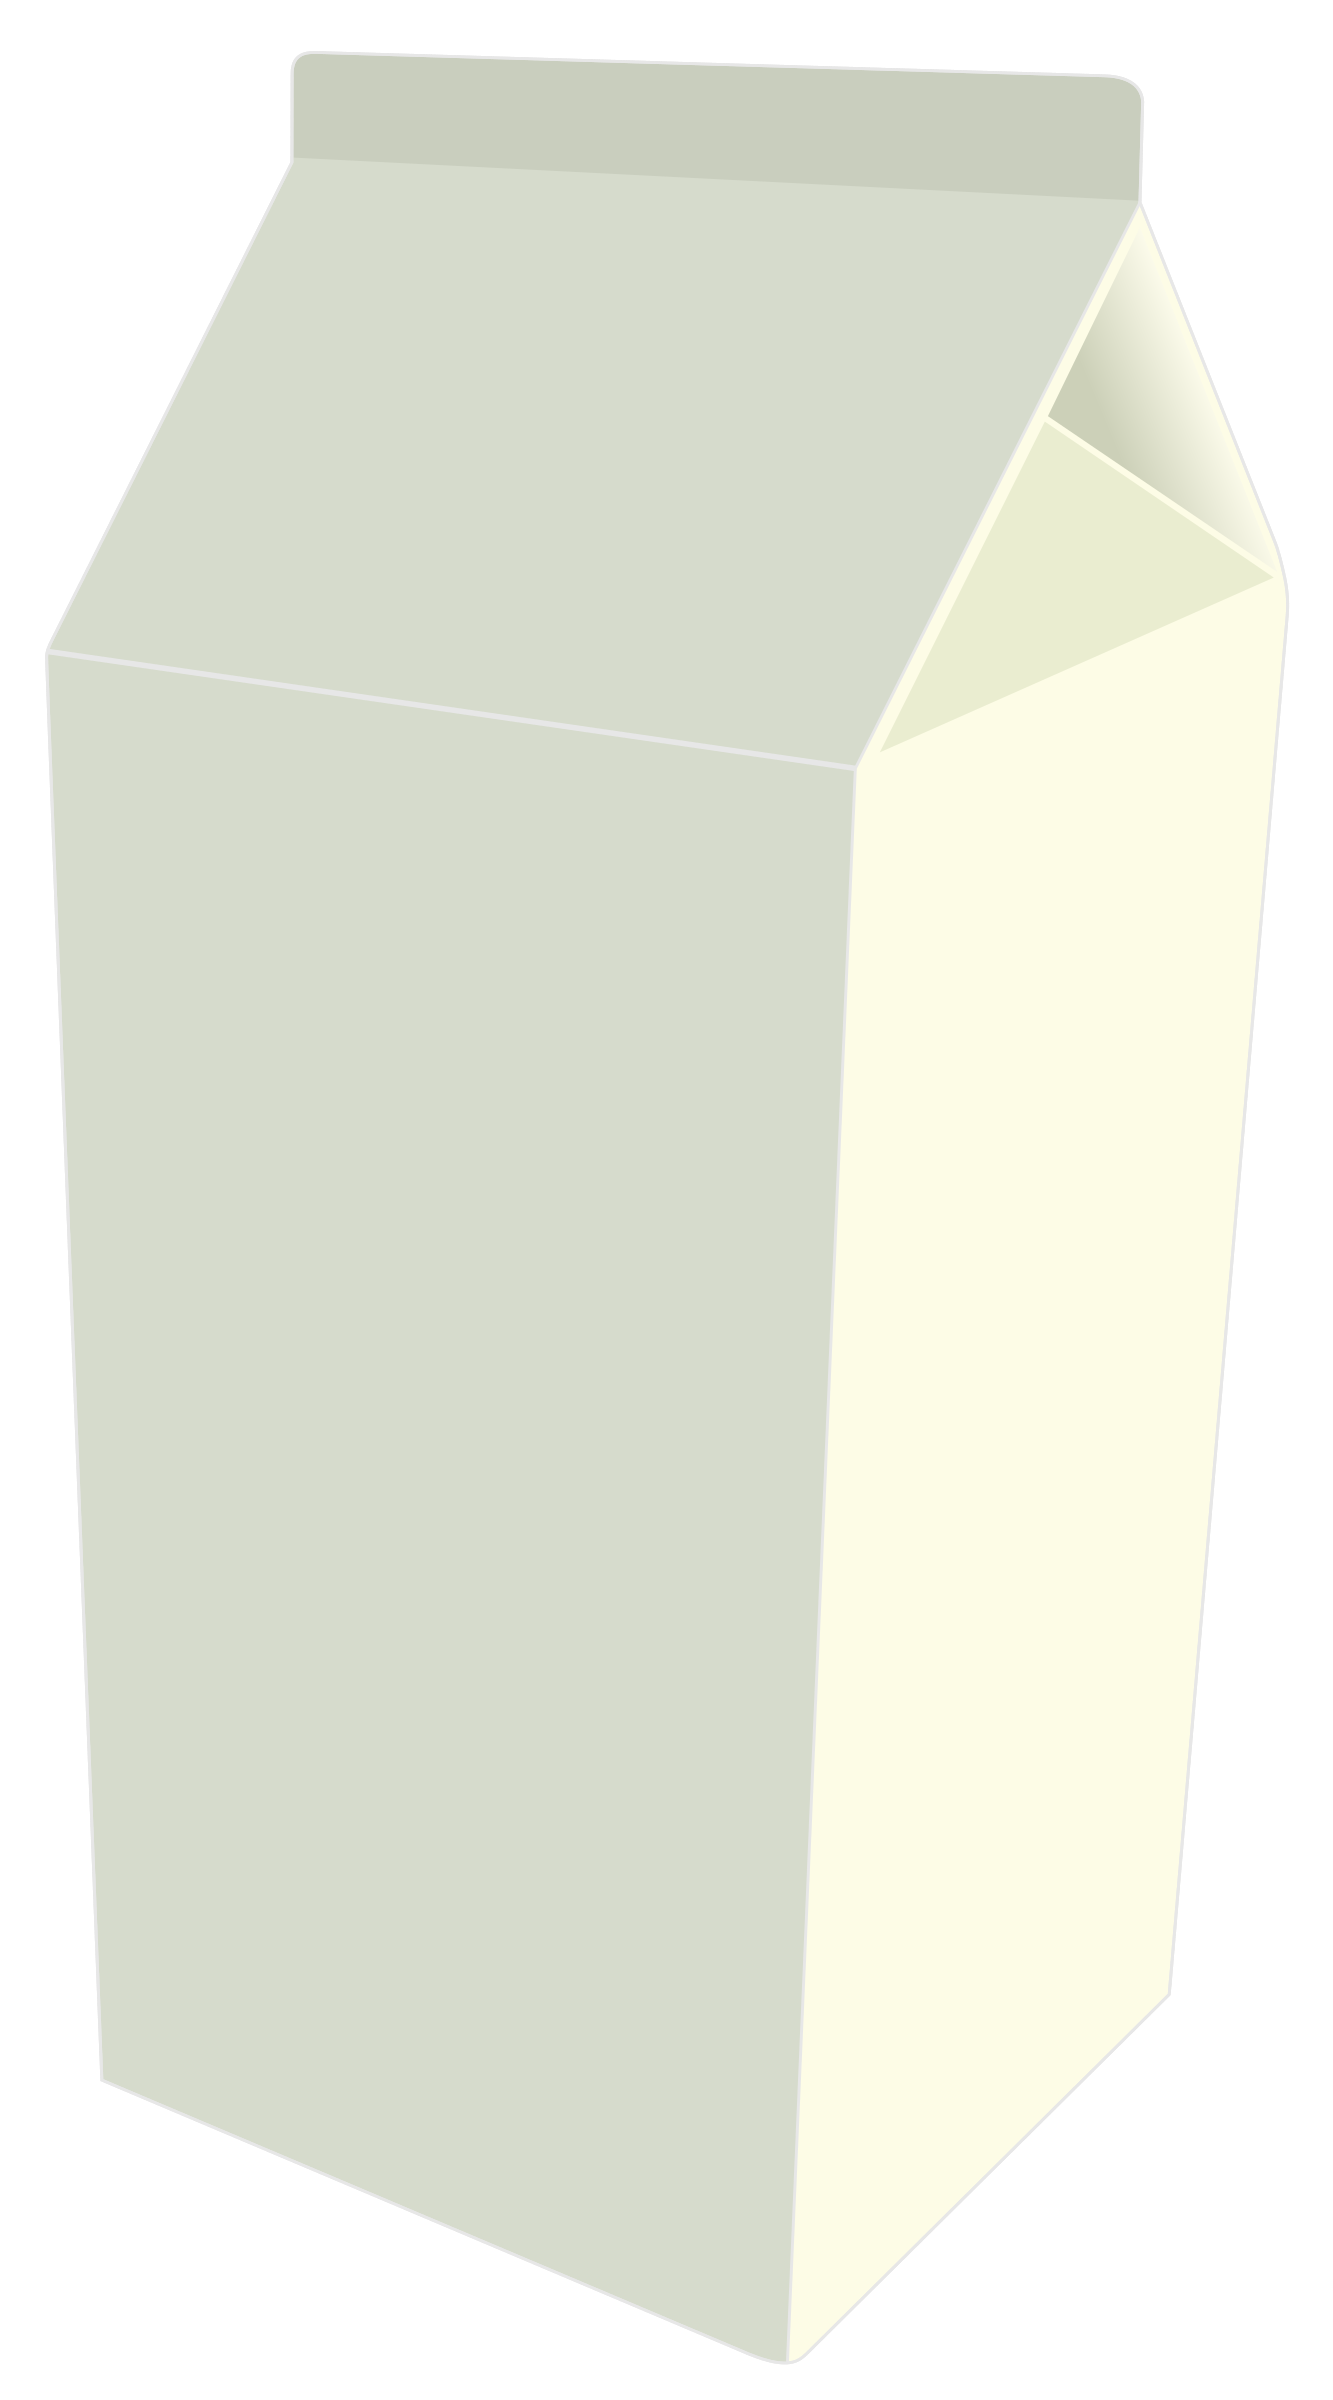 Milk carton PNG